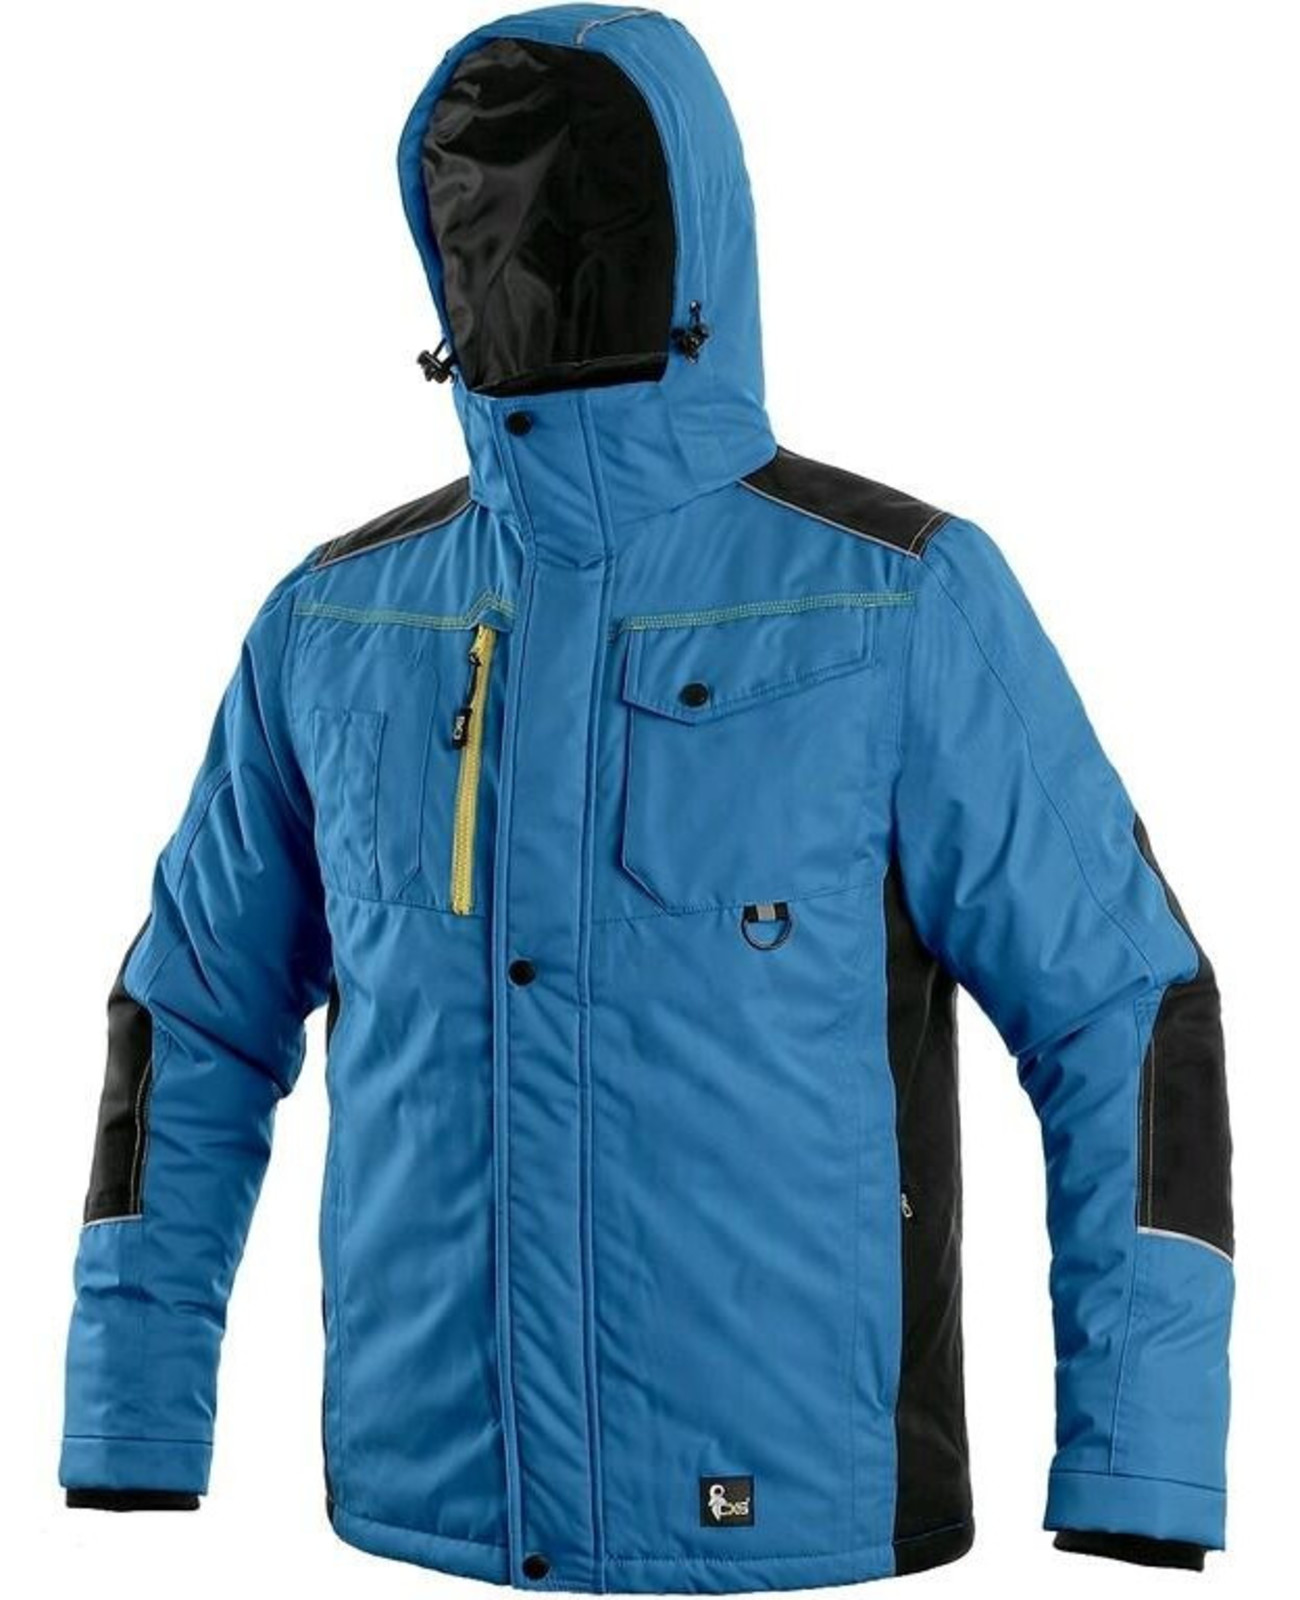 Zimná pracovná bunda CXS Baltimore - veľkosť: M, farba: modrá/čierna